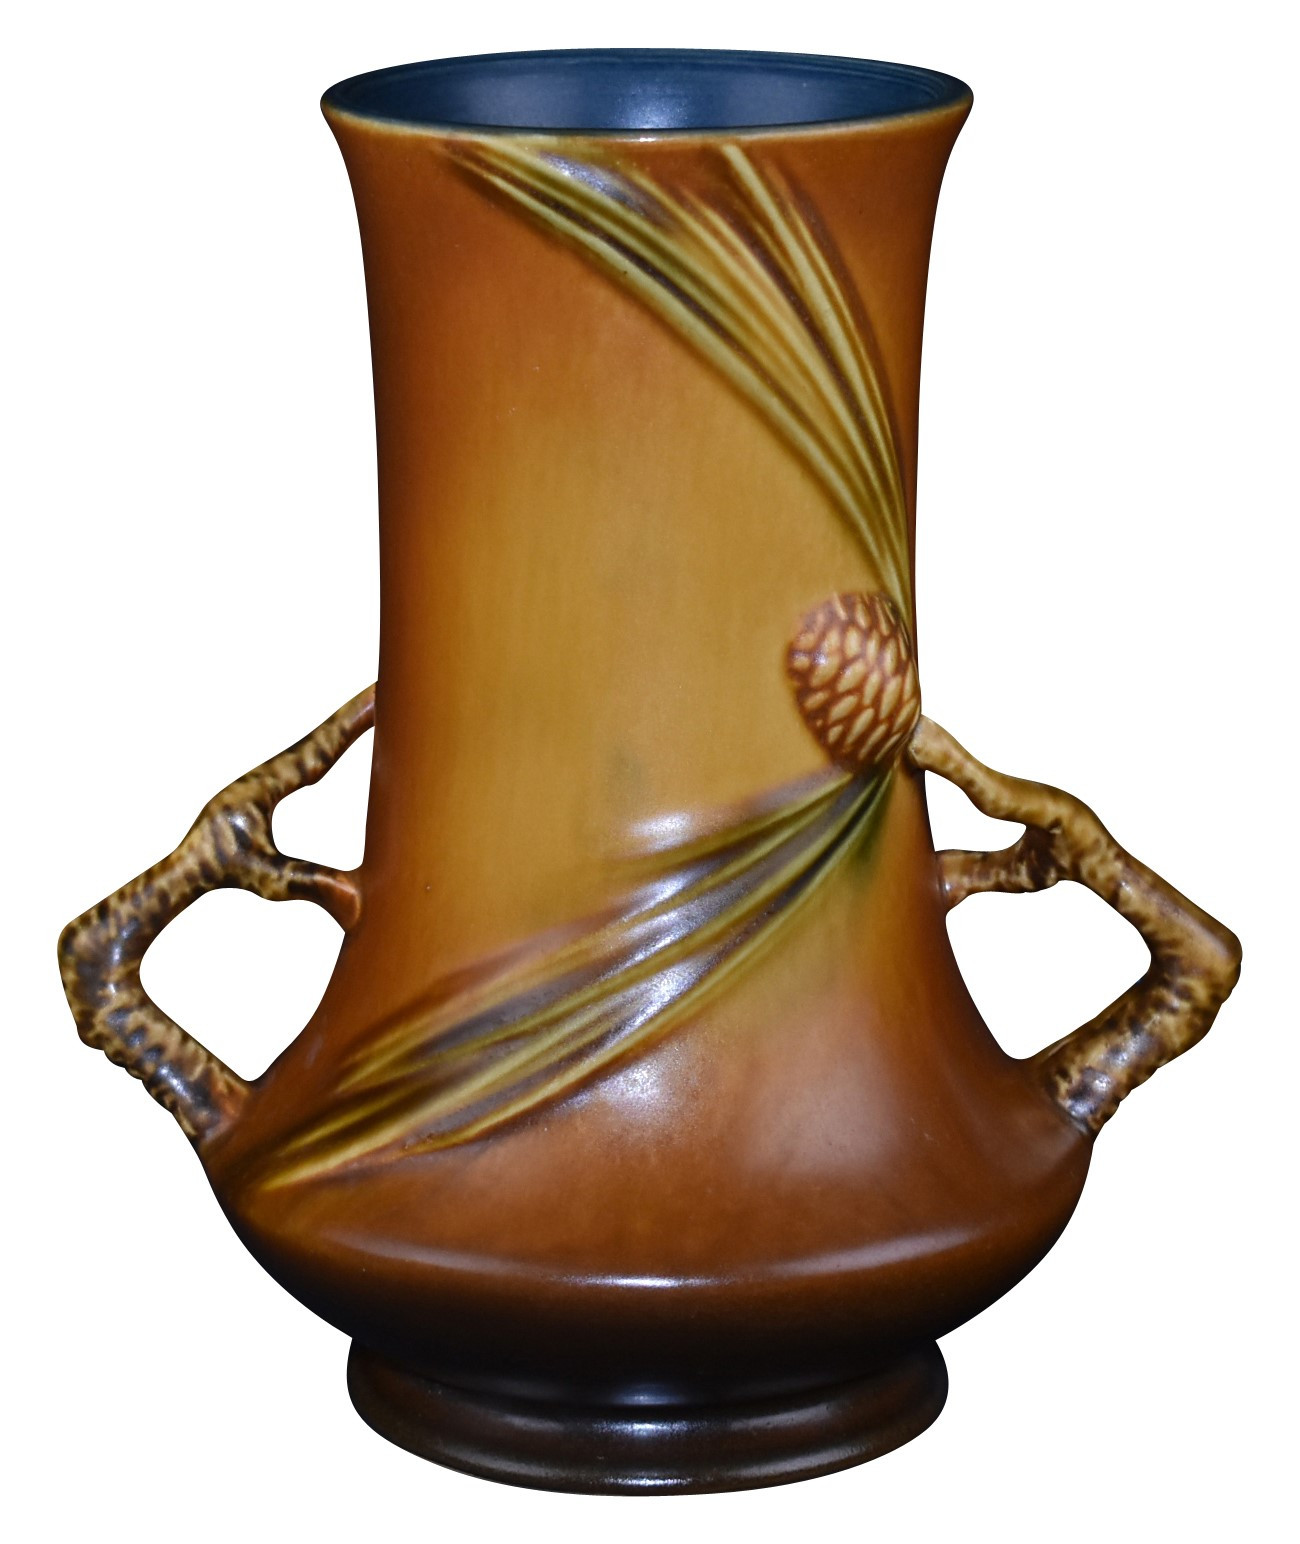 17 Unique Roseville Snowberry Vase 2022 free download roseville snowberry vase of just art pottery from just art pottery in roseville pottery pine cone brown vase 842 8